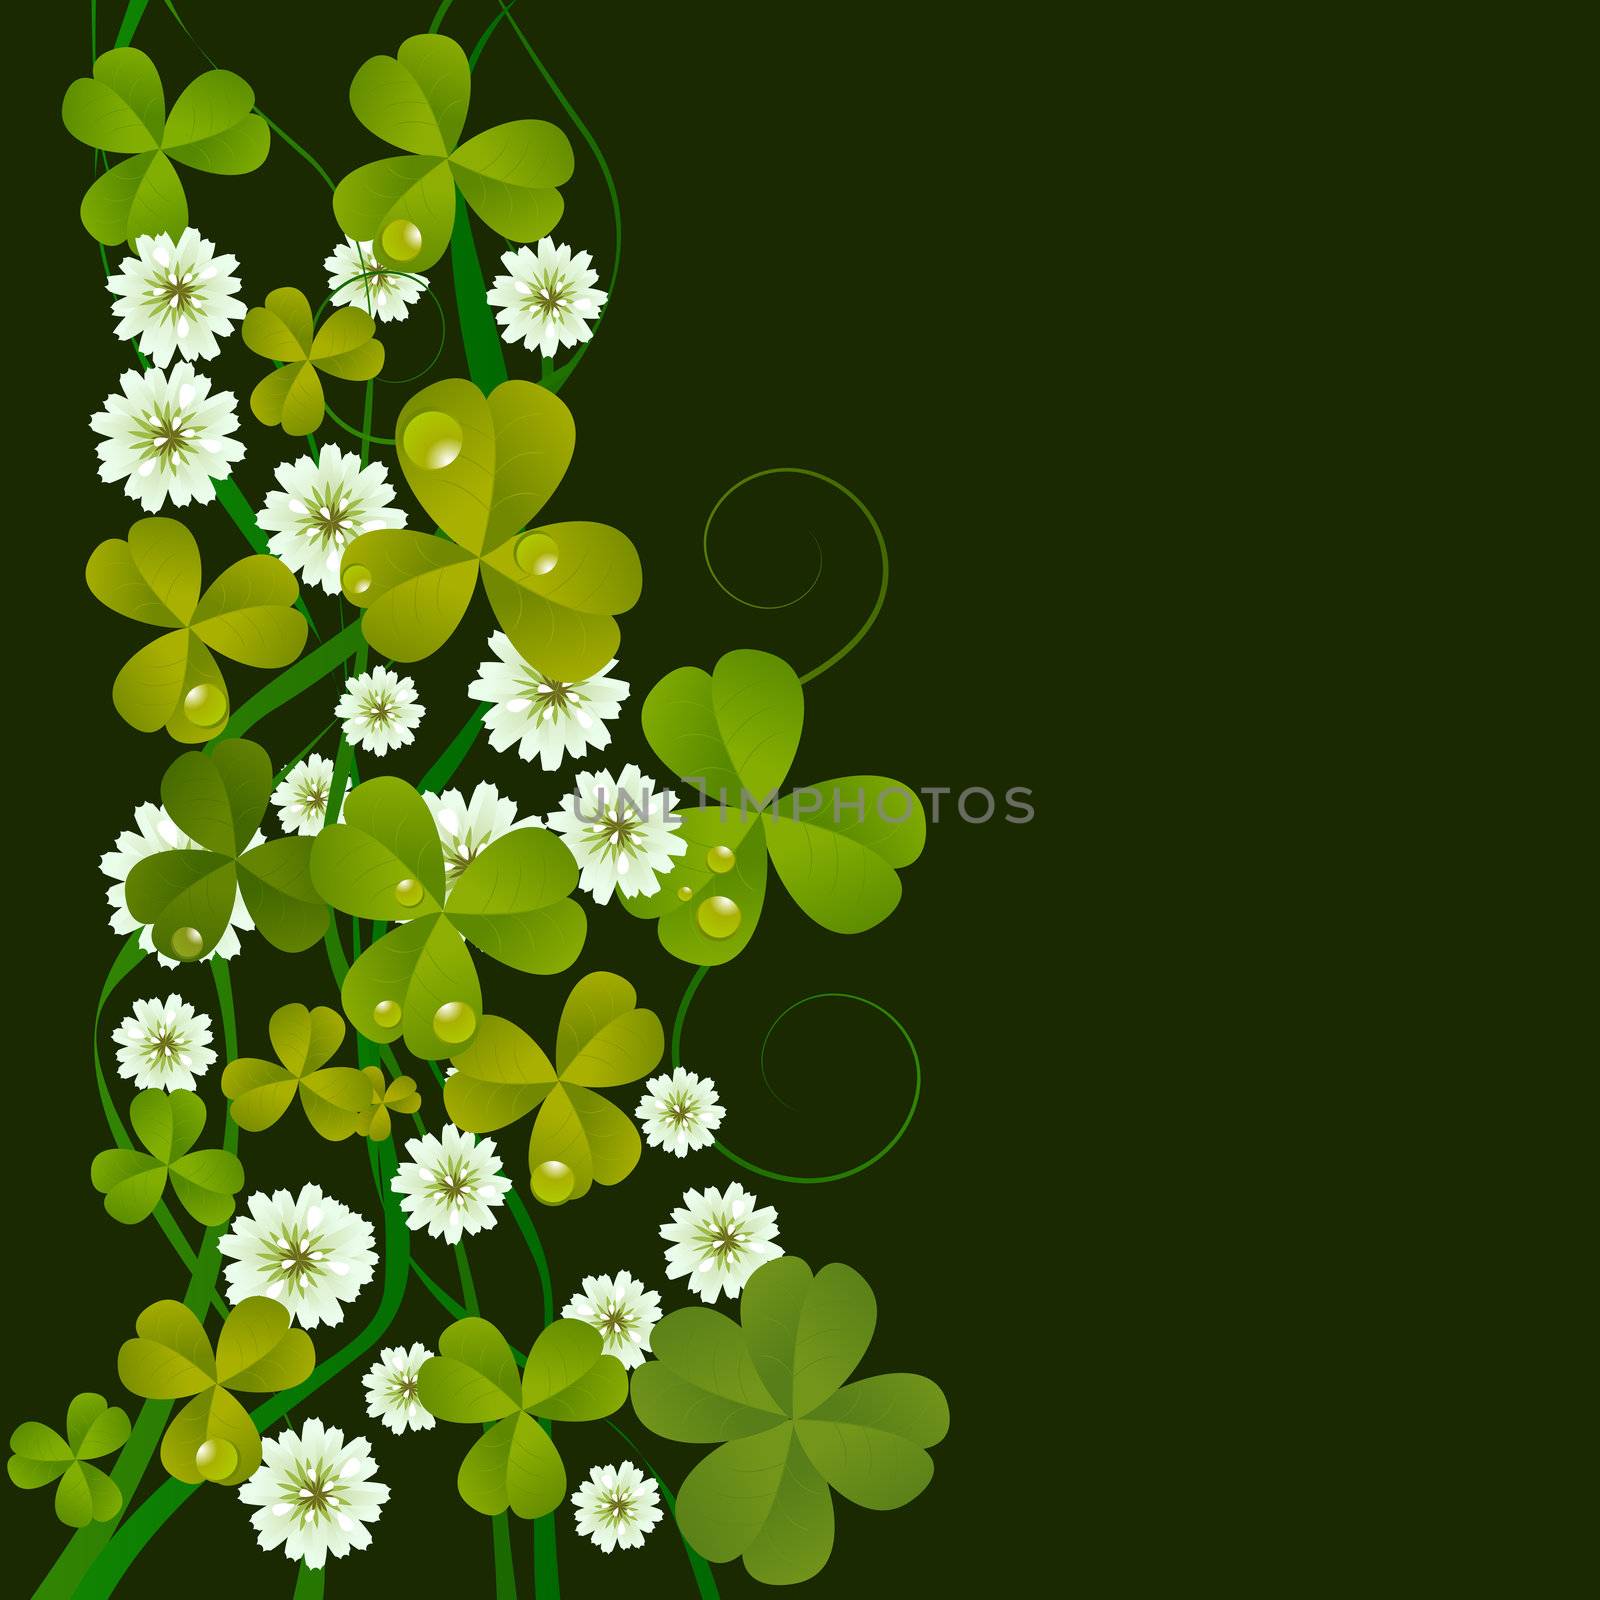 St. Patrick's Day design background, celebration card